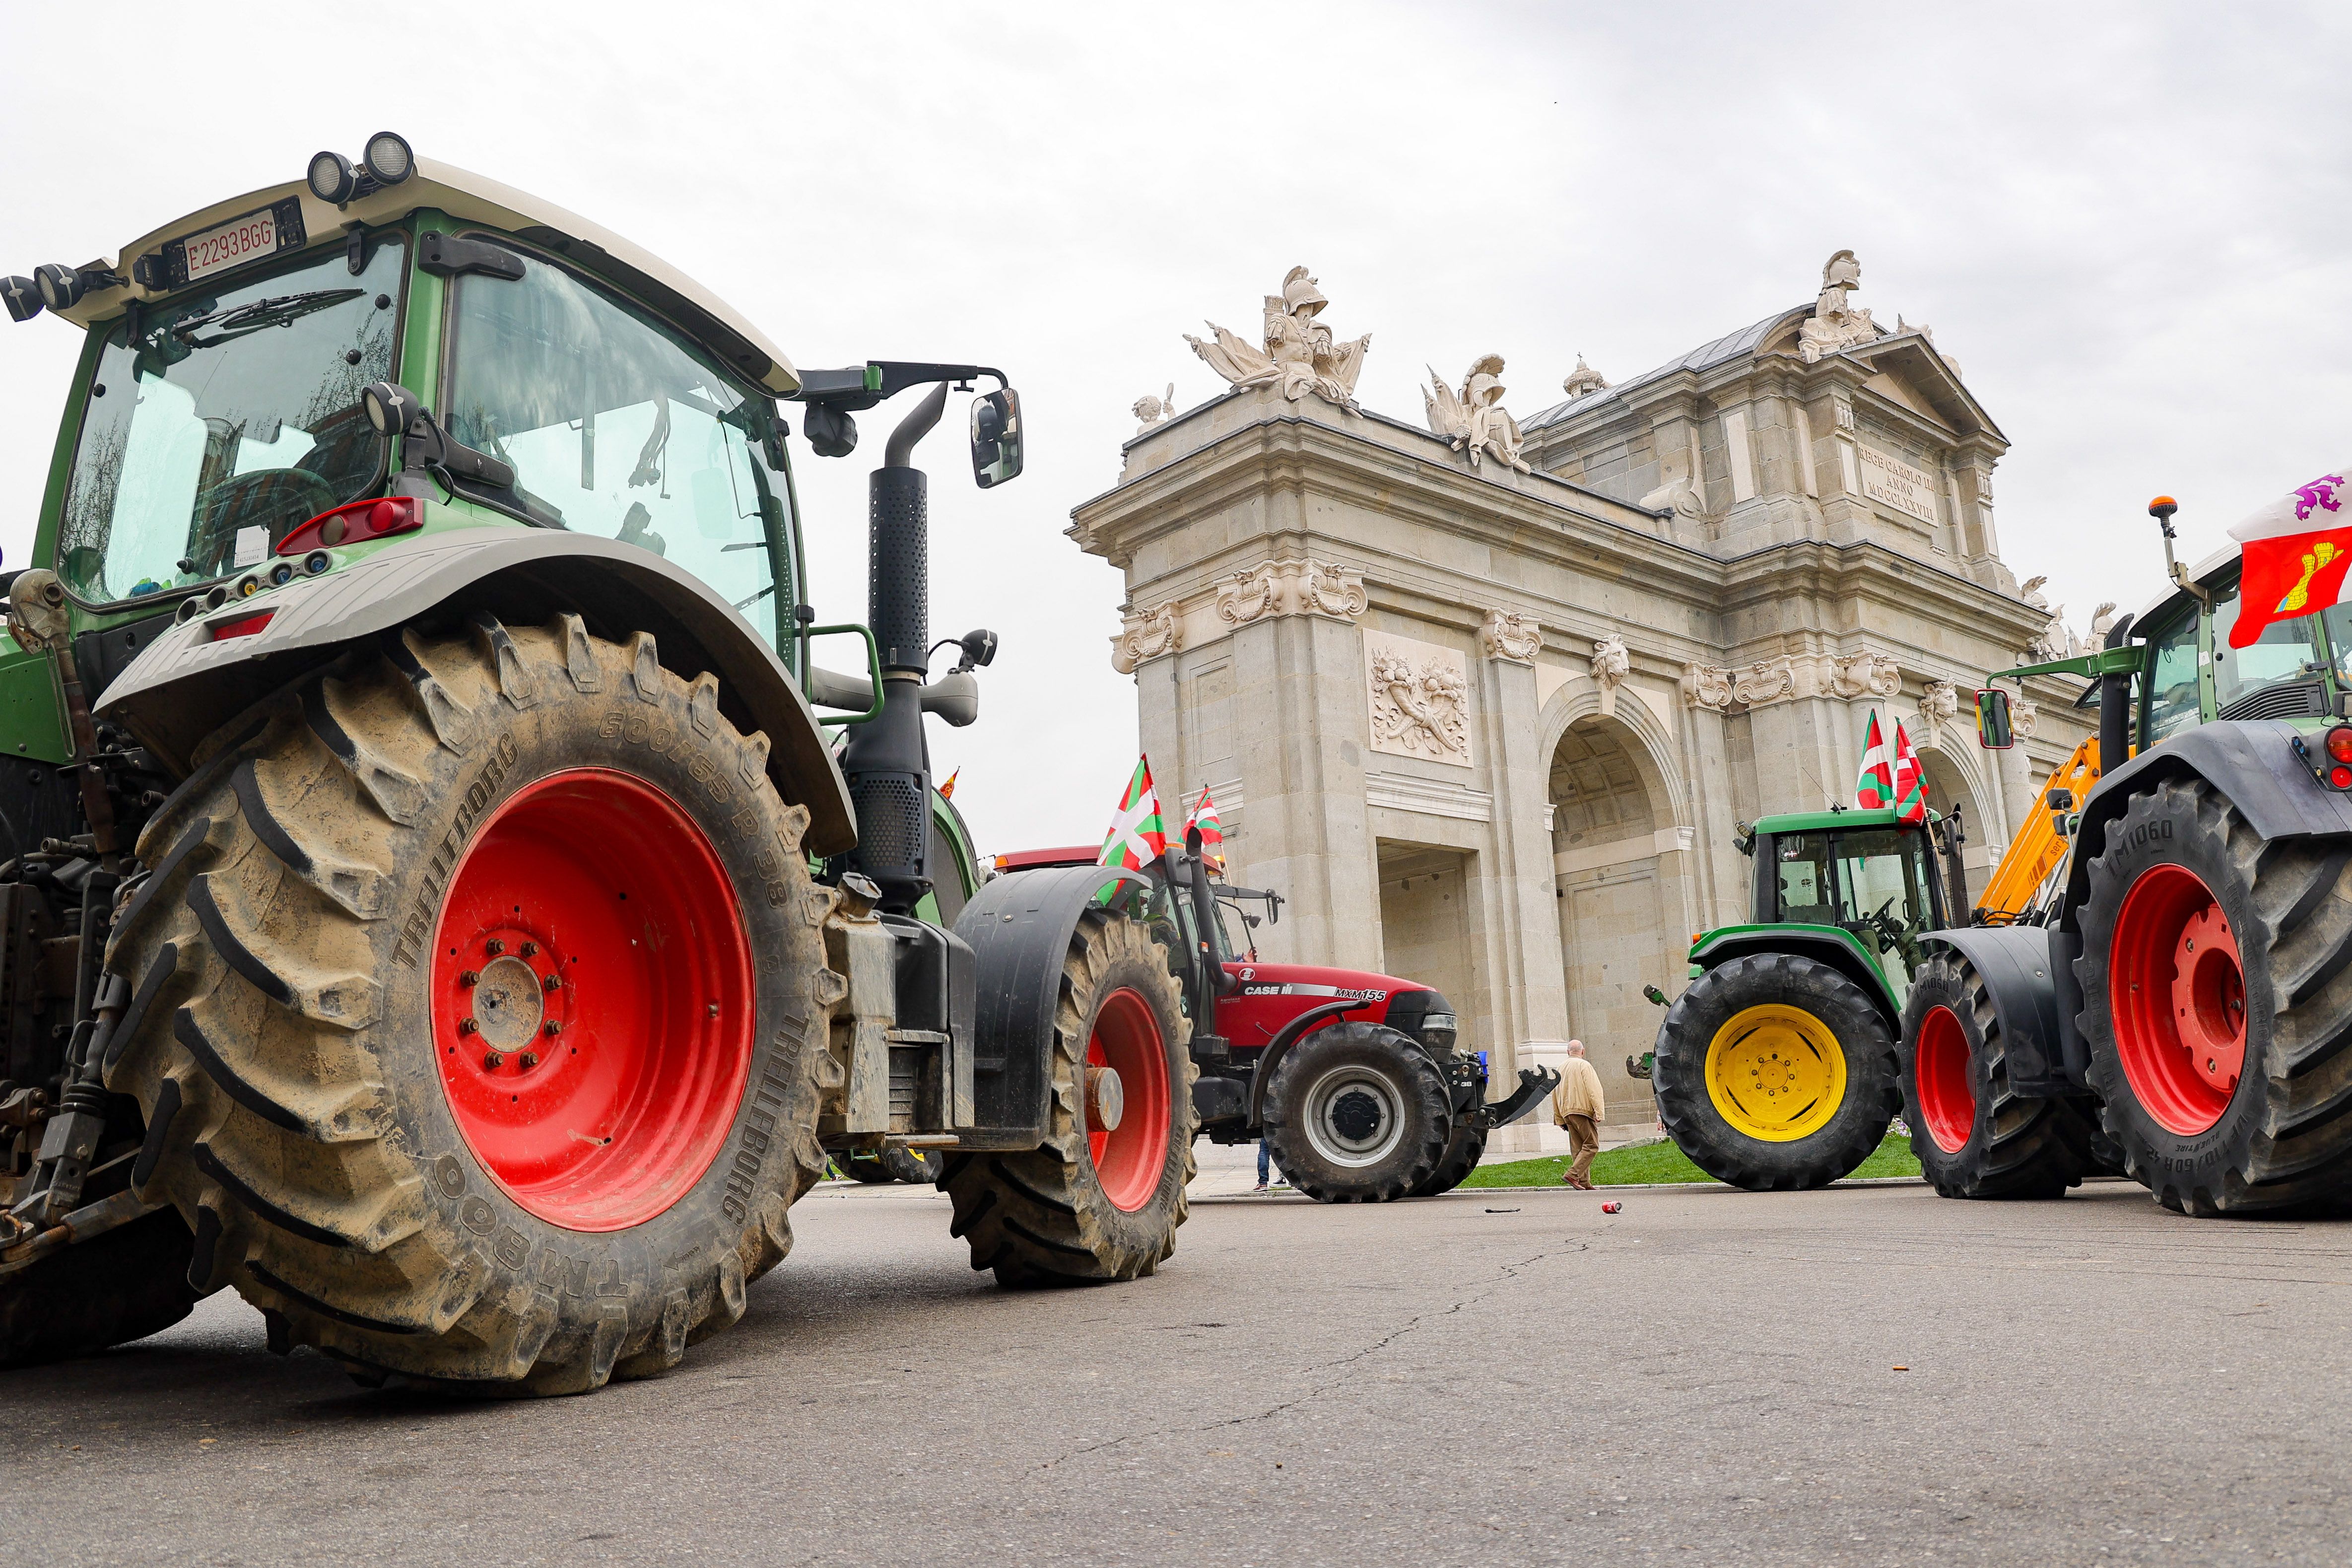 Más de 100 tractores recorren Madrid este lunes pidiendo apoyo y reconocimiento